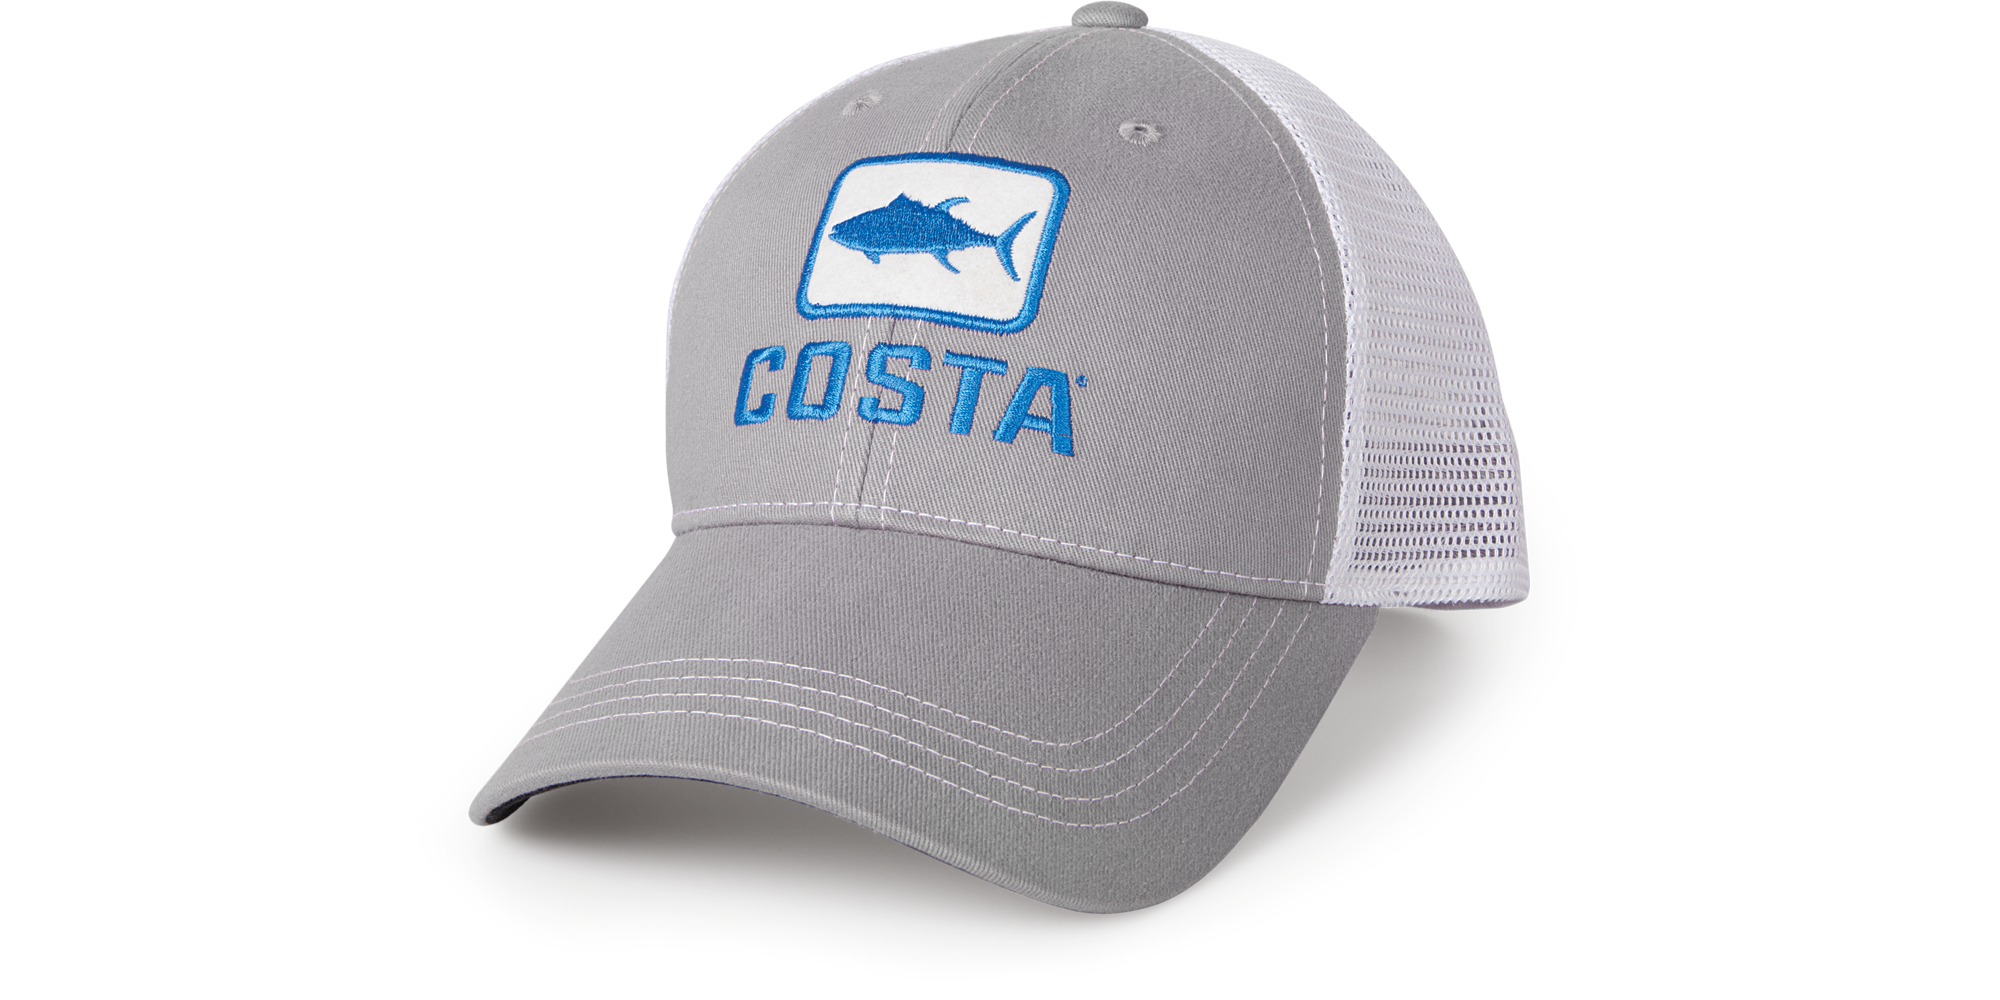 Costa HA 17M Trout Trucker Hat XL Moss/Stone